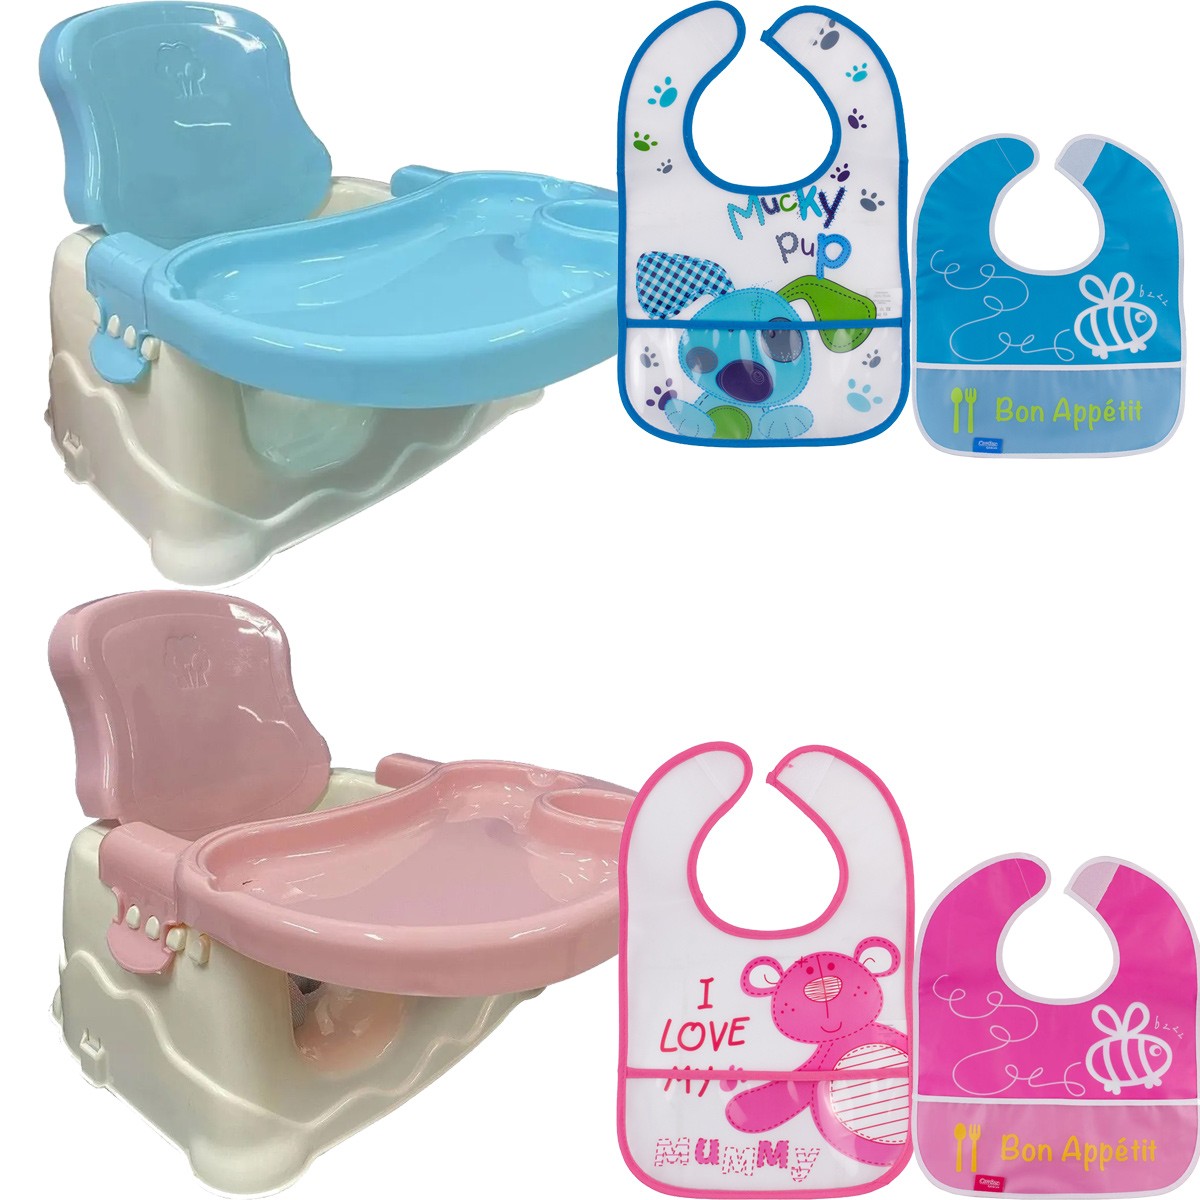 Cadeira de Refeição Infantil Bebê Booster Com Babador Infantil - Brinqway